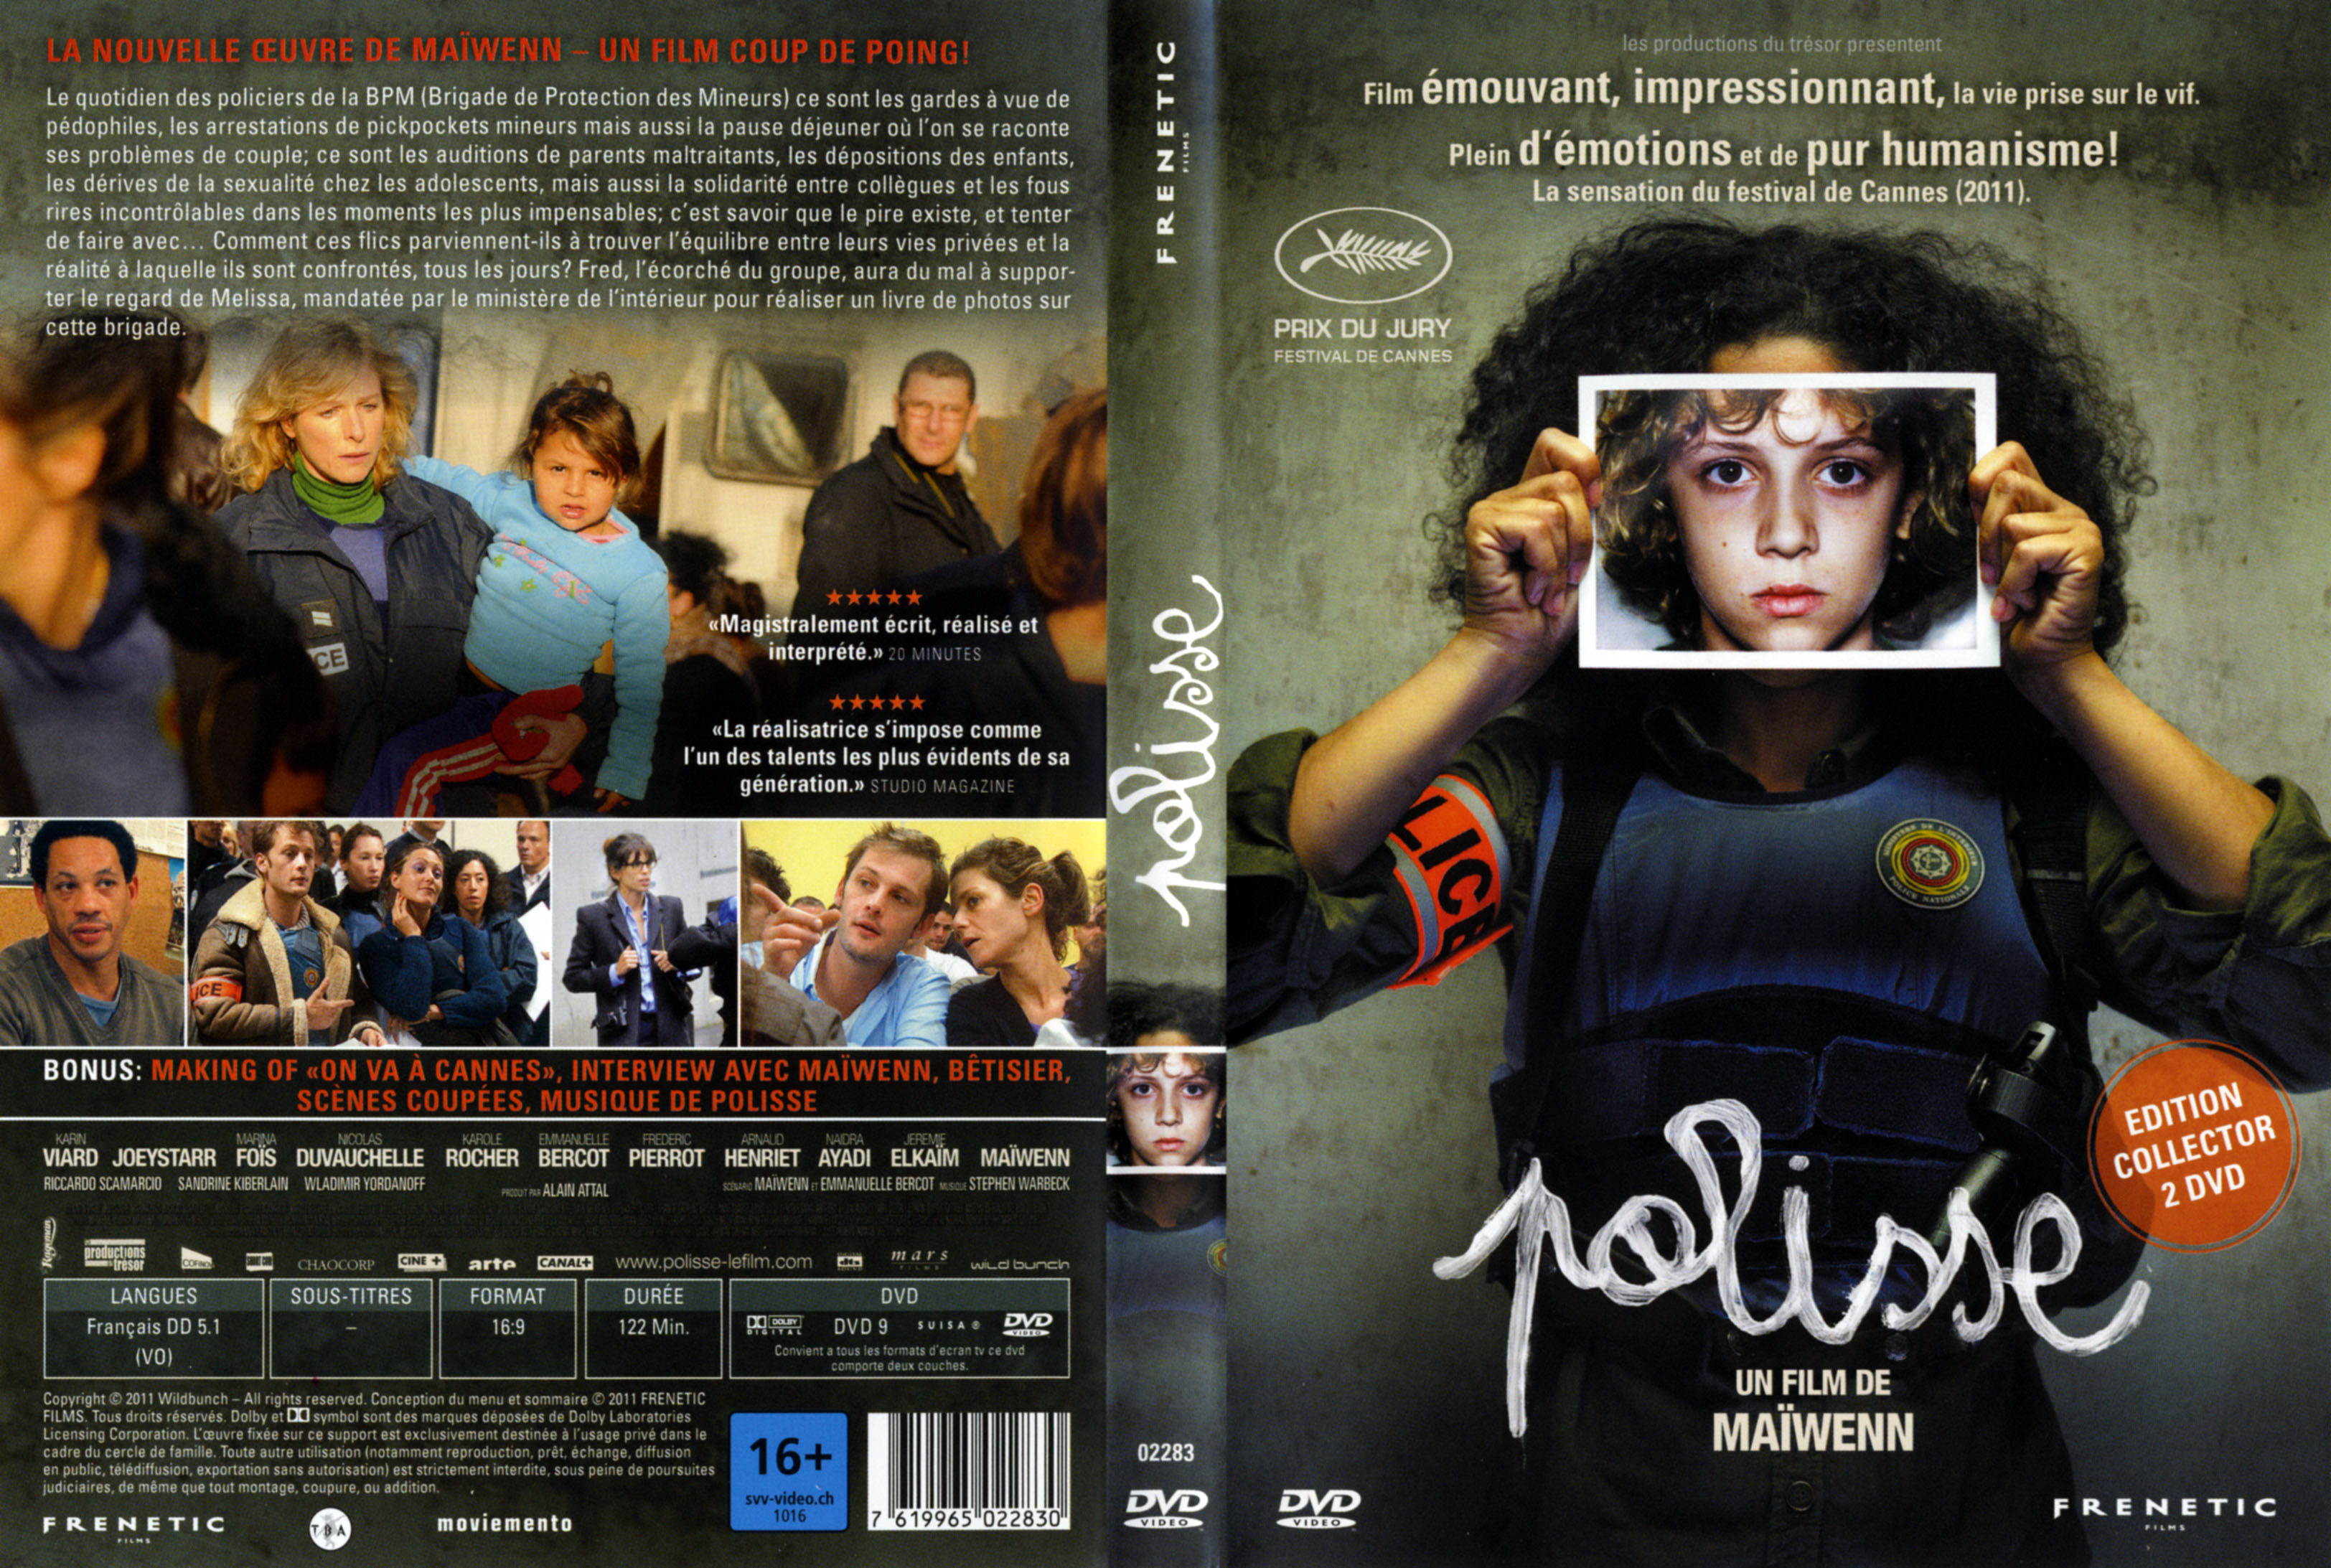 Jaquette DVD Polisse v2